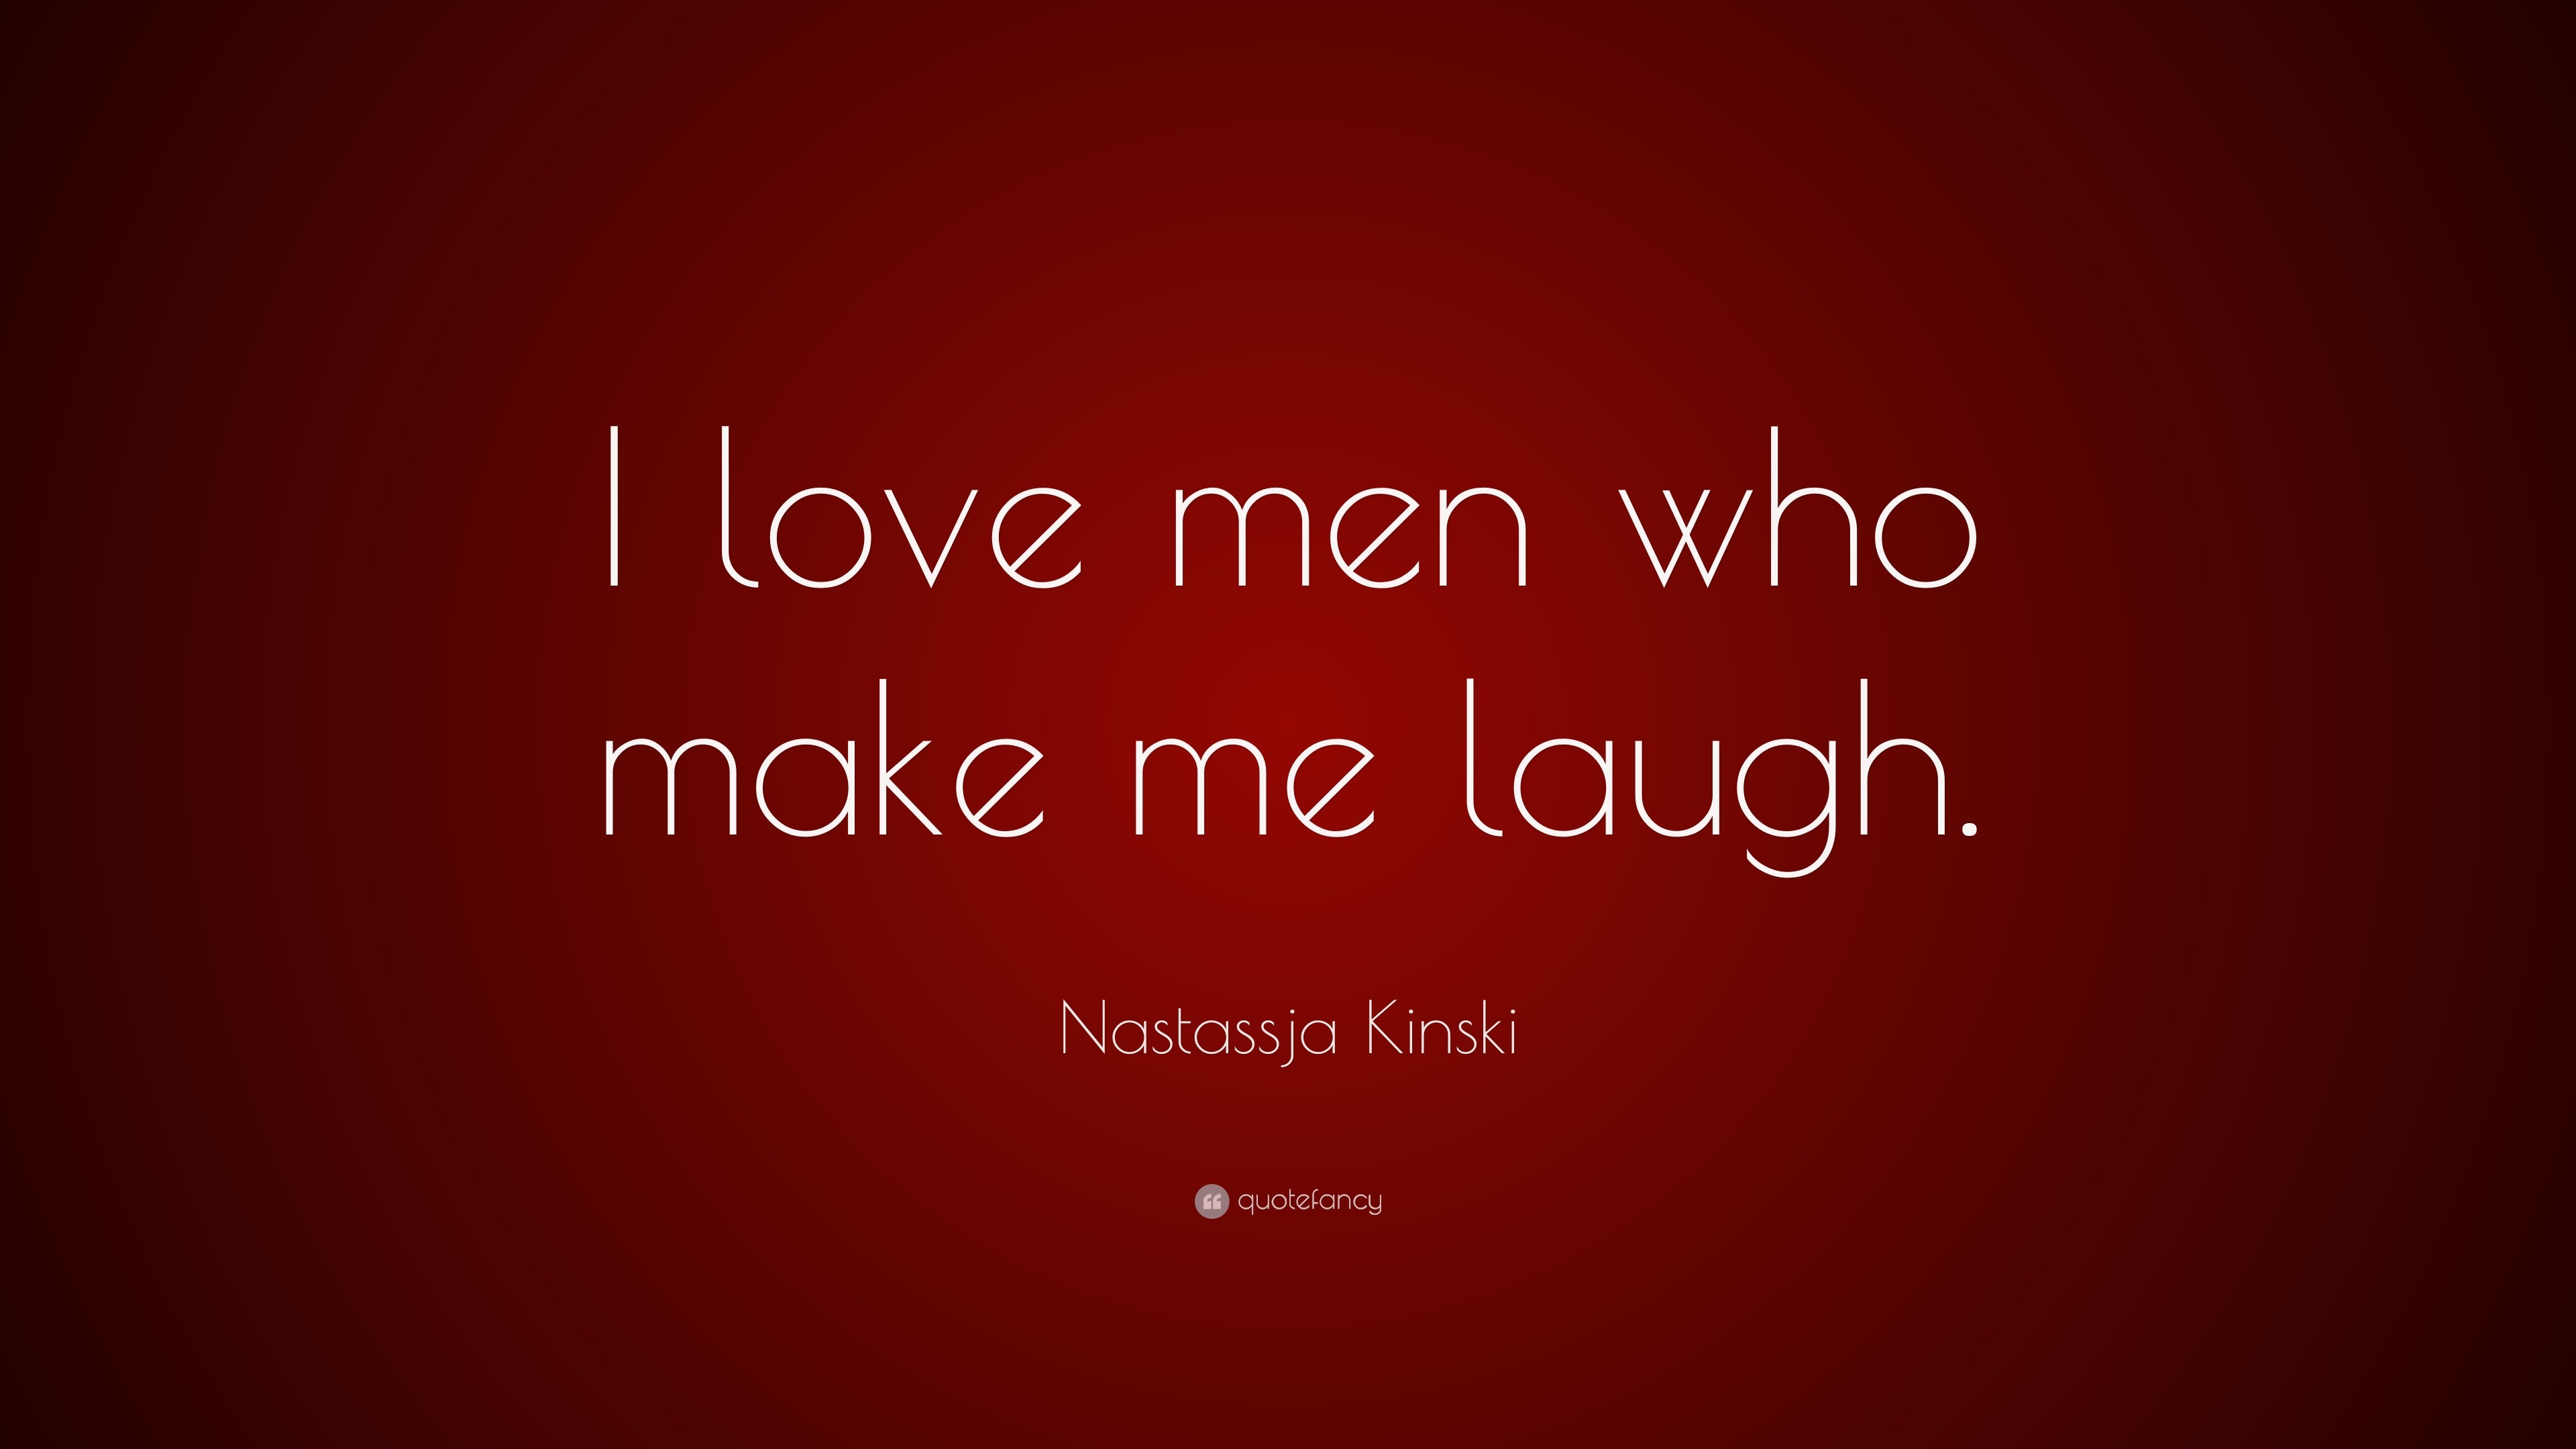 3840x2160 Nastassja Kinski Quote: “I love men who make me laugh.”